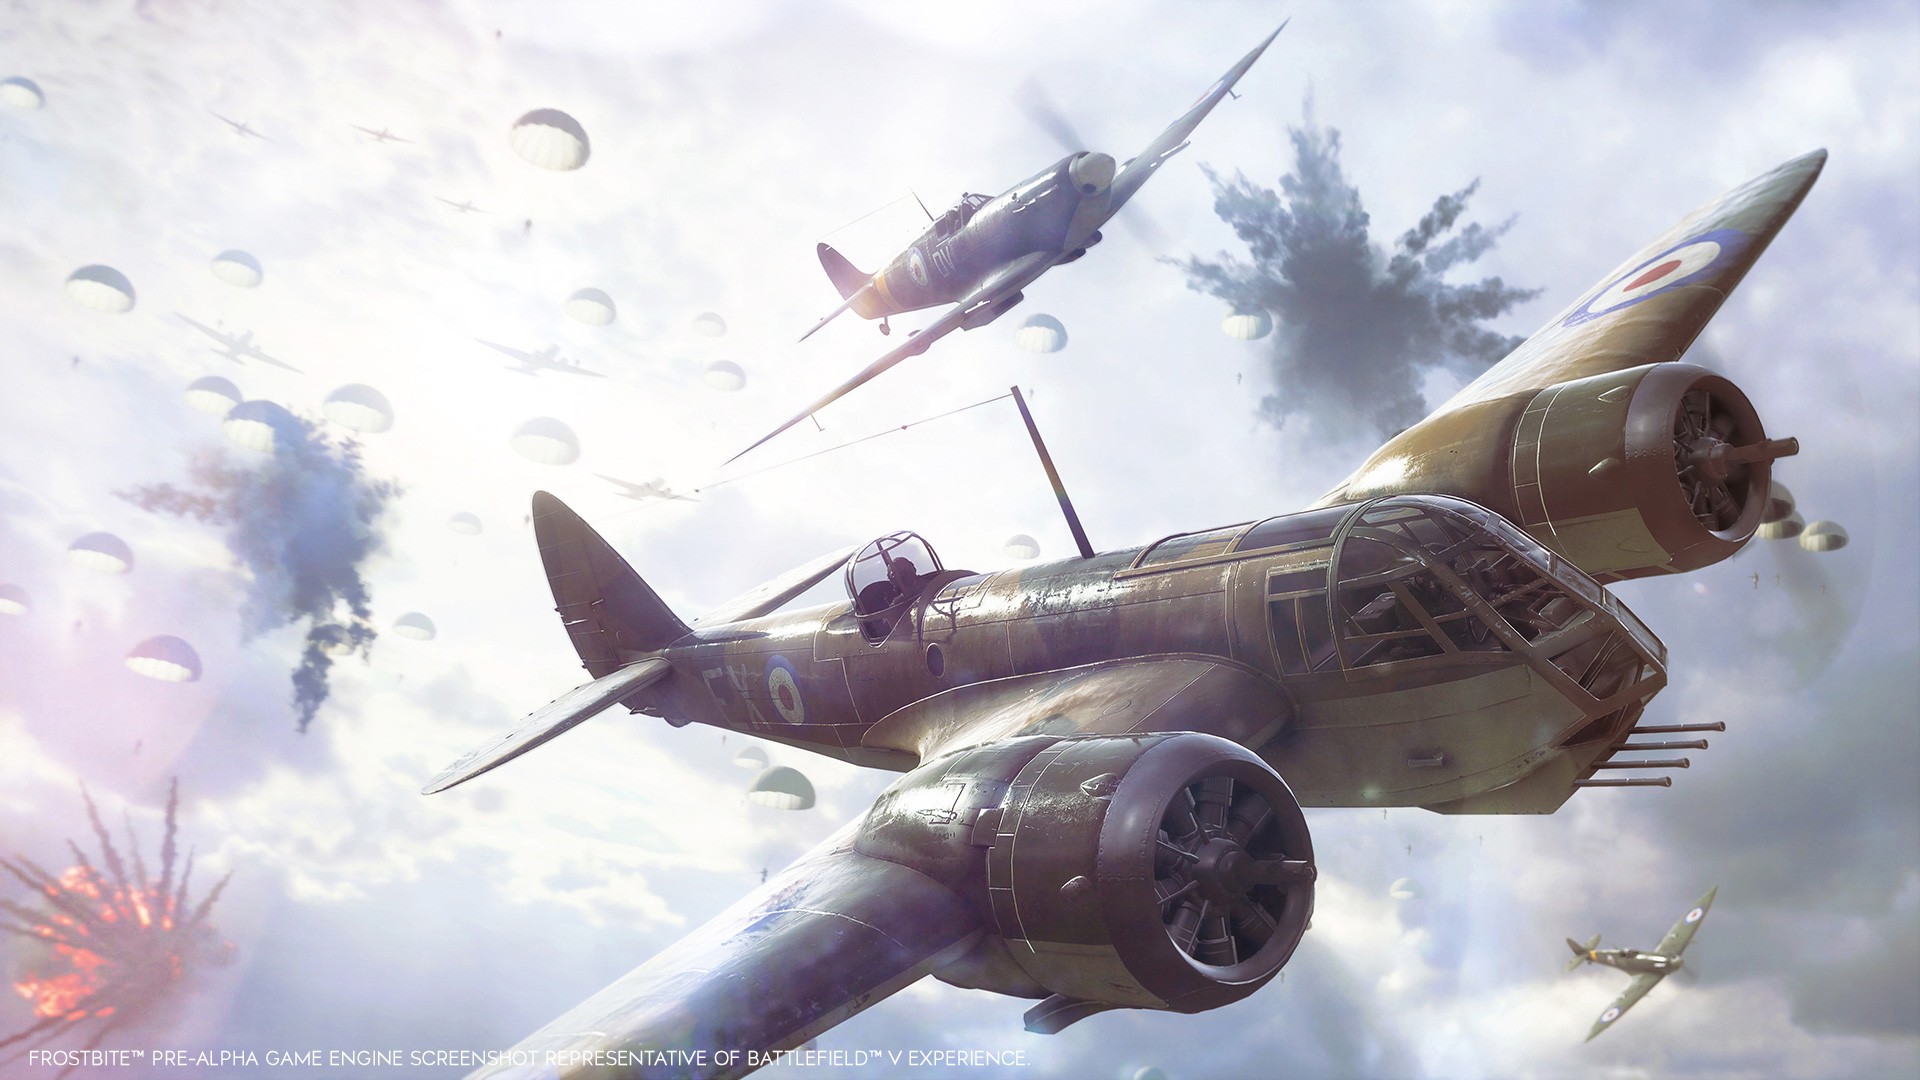 Chế độ chơi mới ‘Airborne’ của Battlefied V sẽ cho phép người chơi nhảy dù xuống trận chiến nảy lửa